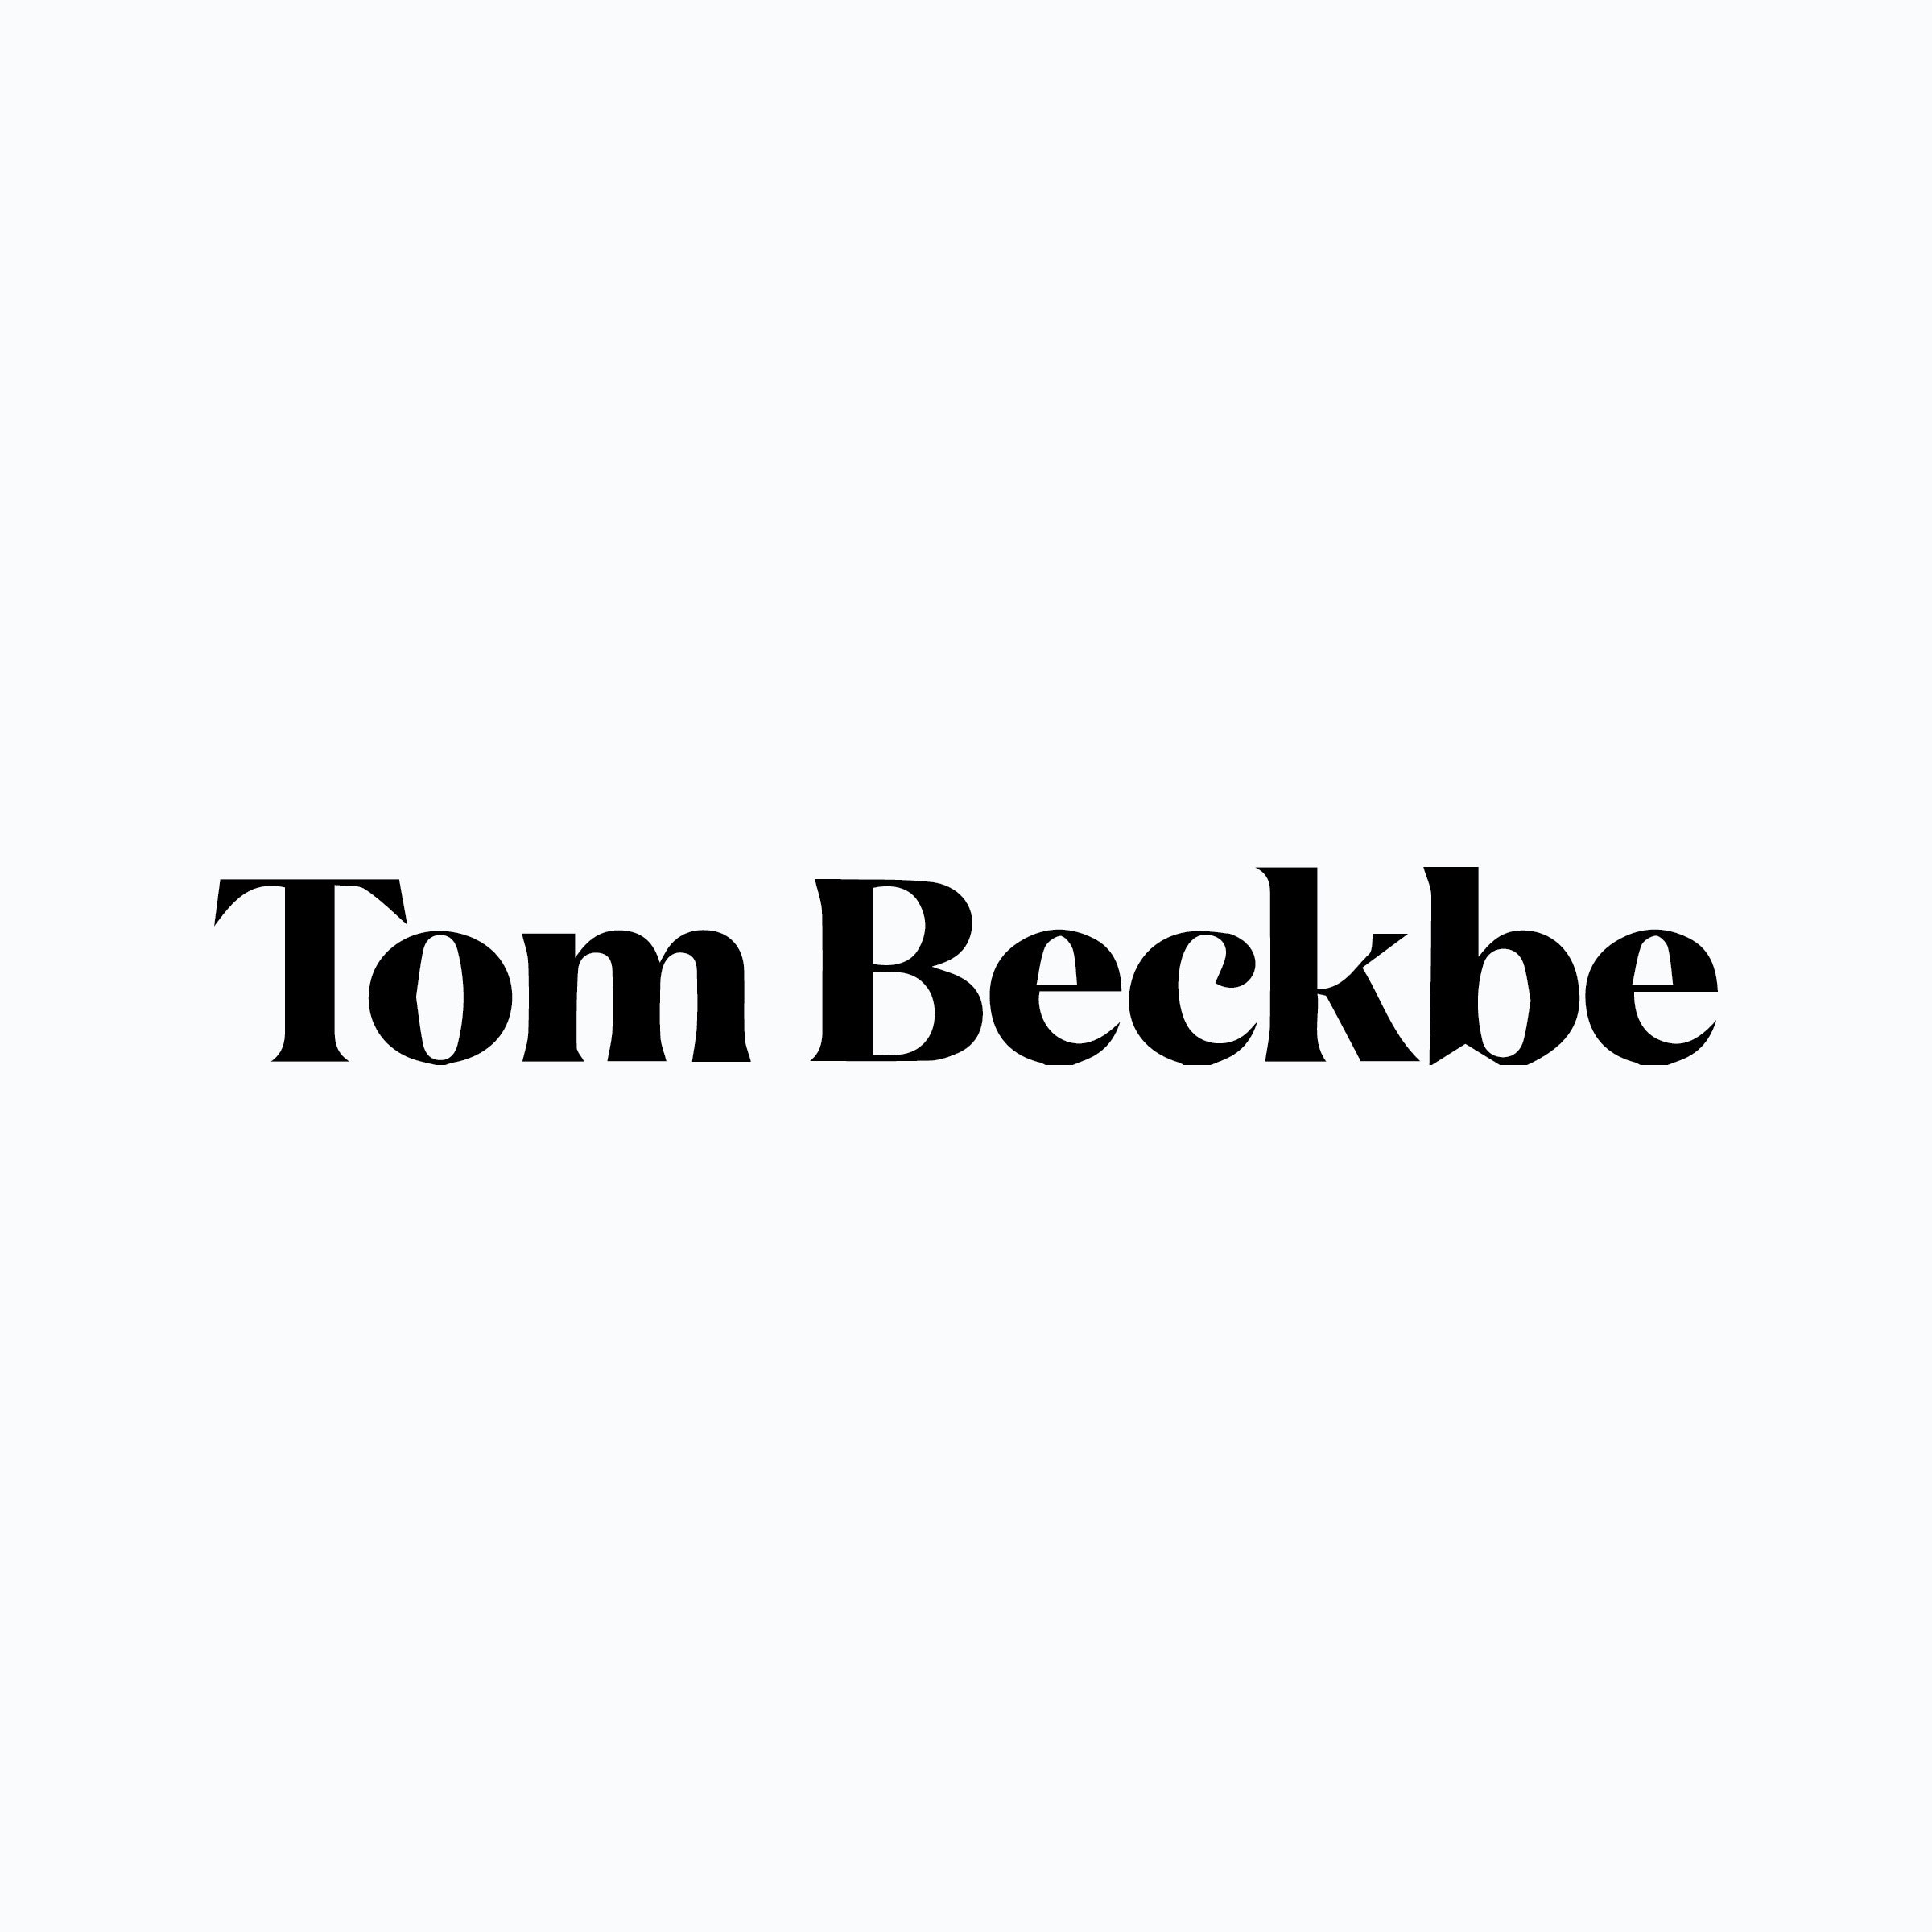 Tom Beckbe